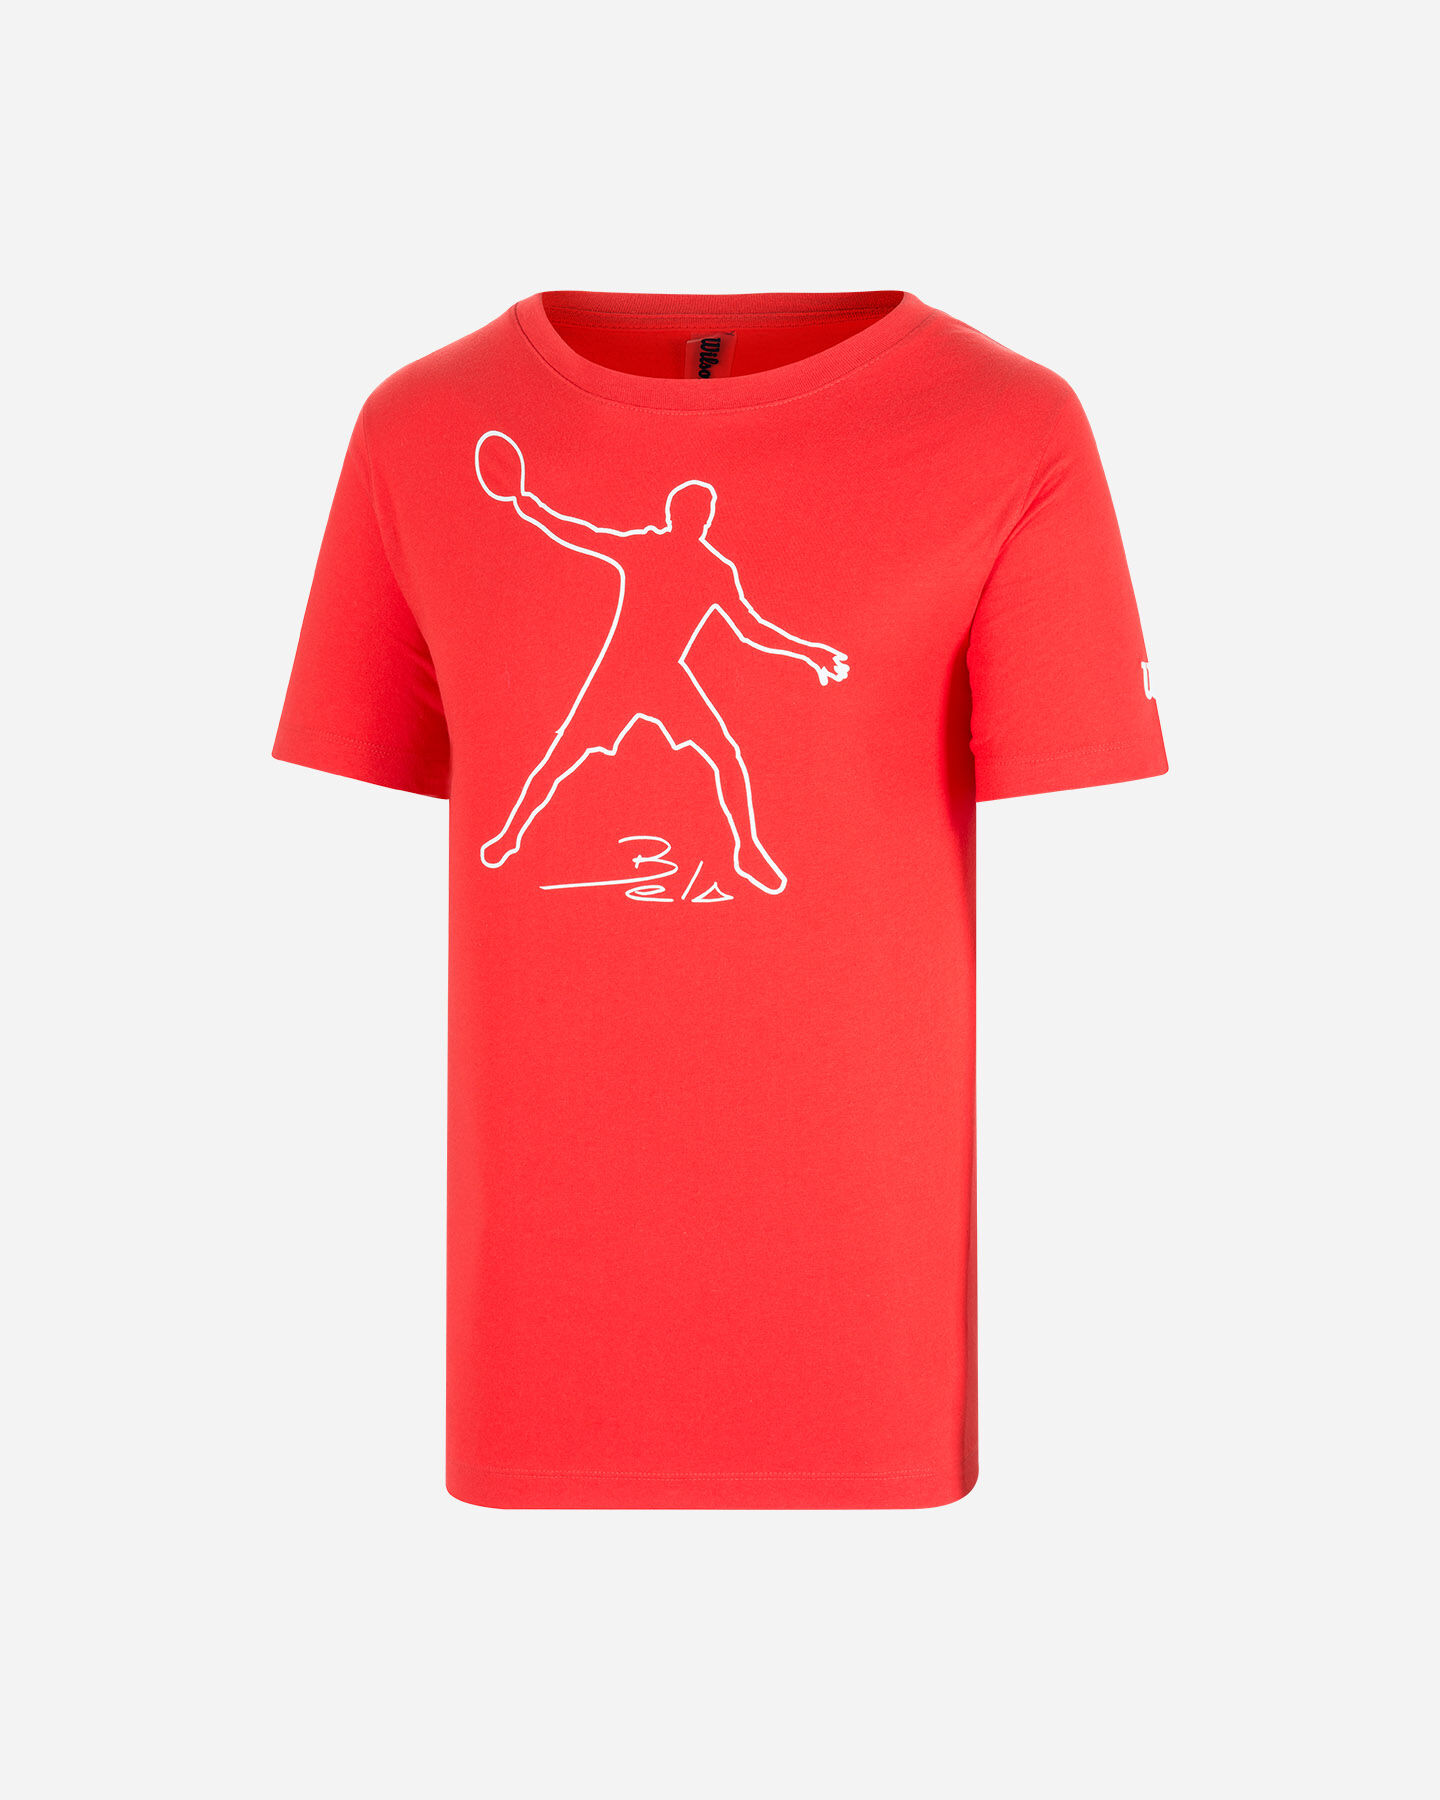  T-Shirt tennis WILSON T-SHIRT WILSON MBELA TECH RED M S5294969|UNI|S scatto 0